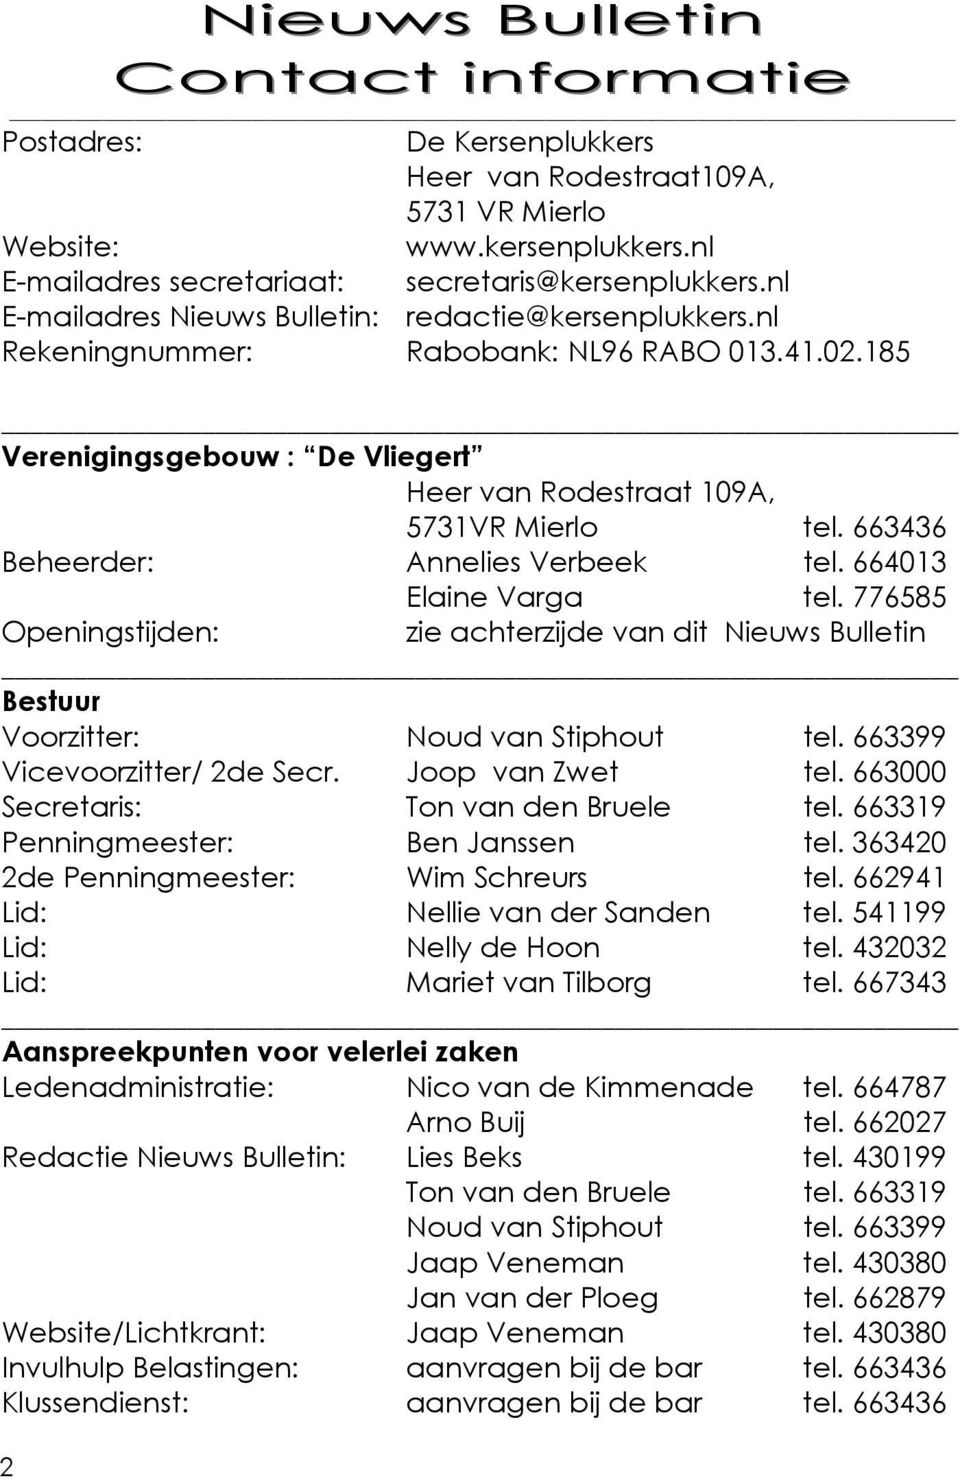 663436 Beheerder: Annelies Verbeek tel. 664013 Elaine Varga tel. 776585 Openingstijden: zie achterzijde van dit Nieuws Bulletin Bestuur Voorzitter: Noud van Stiphout tel.